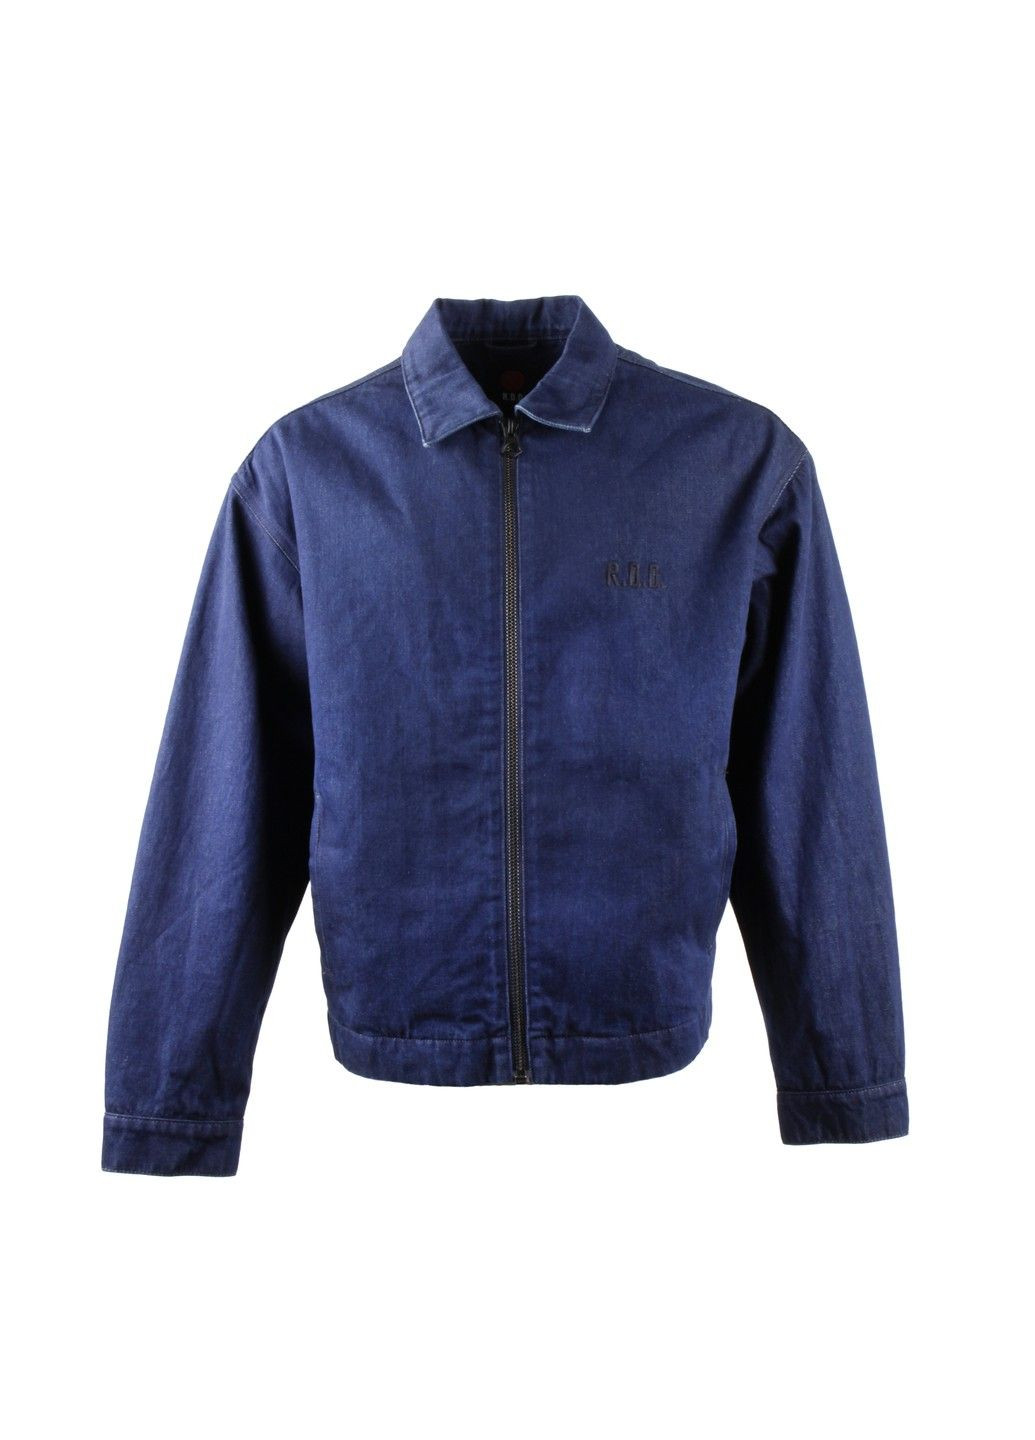 Синяя демисезонная куртка мужская r.d.d No Brand